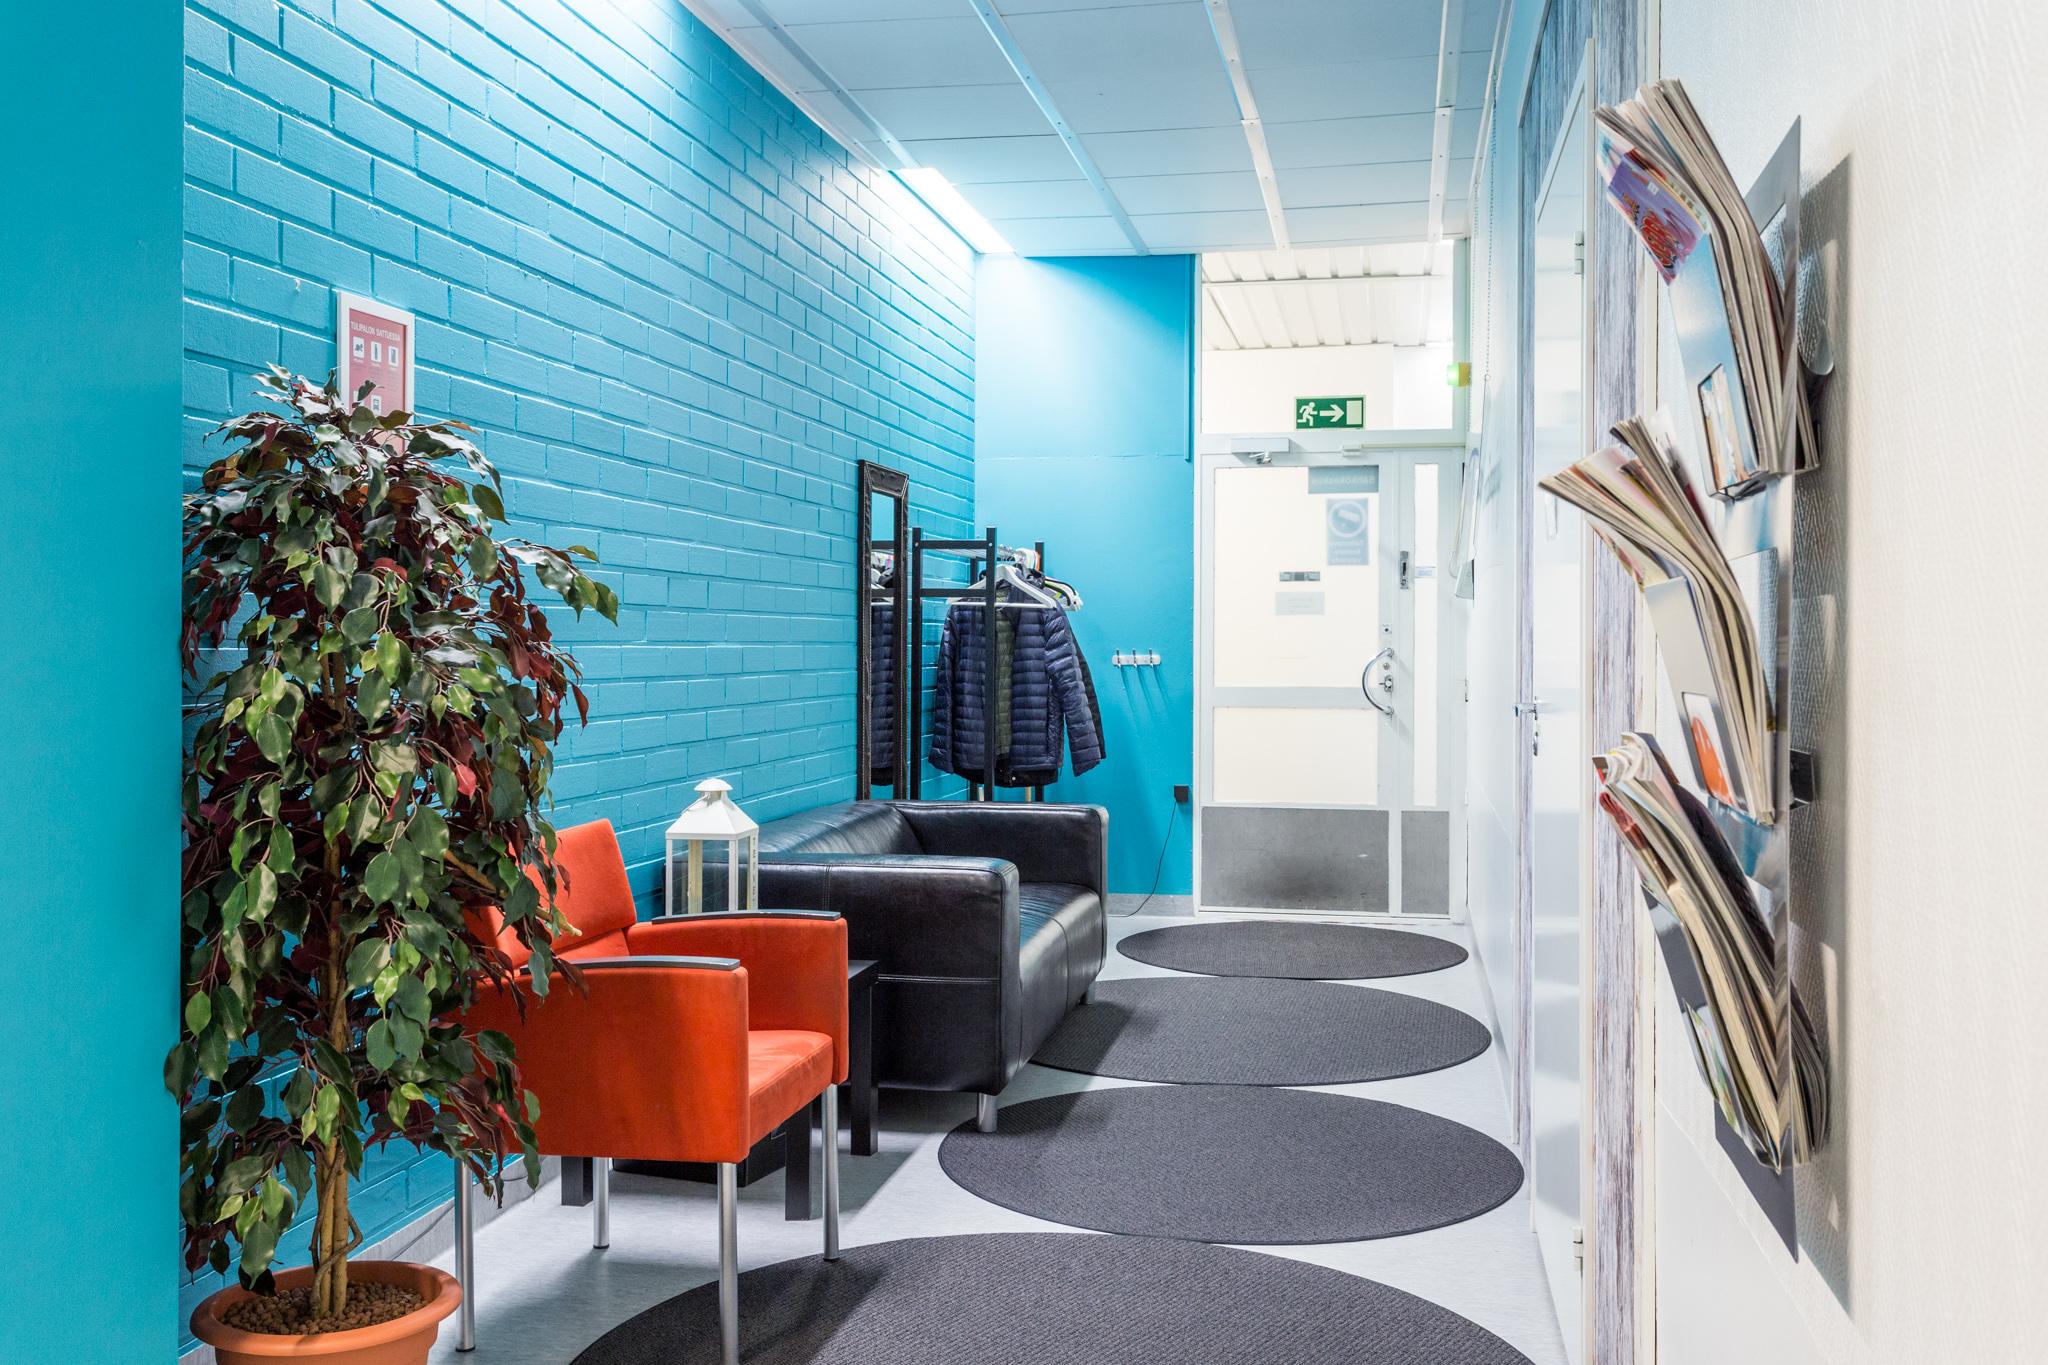 Coronaria kuntoutus- ja terapiapalvelut Oulun toimipisteen sisääntulokäytävä, jossa turkoosi seinä, tuoli ja sohva odotusta varten.